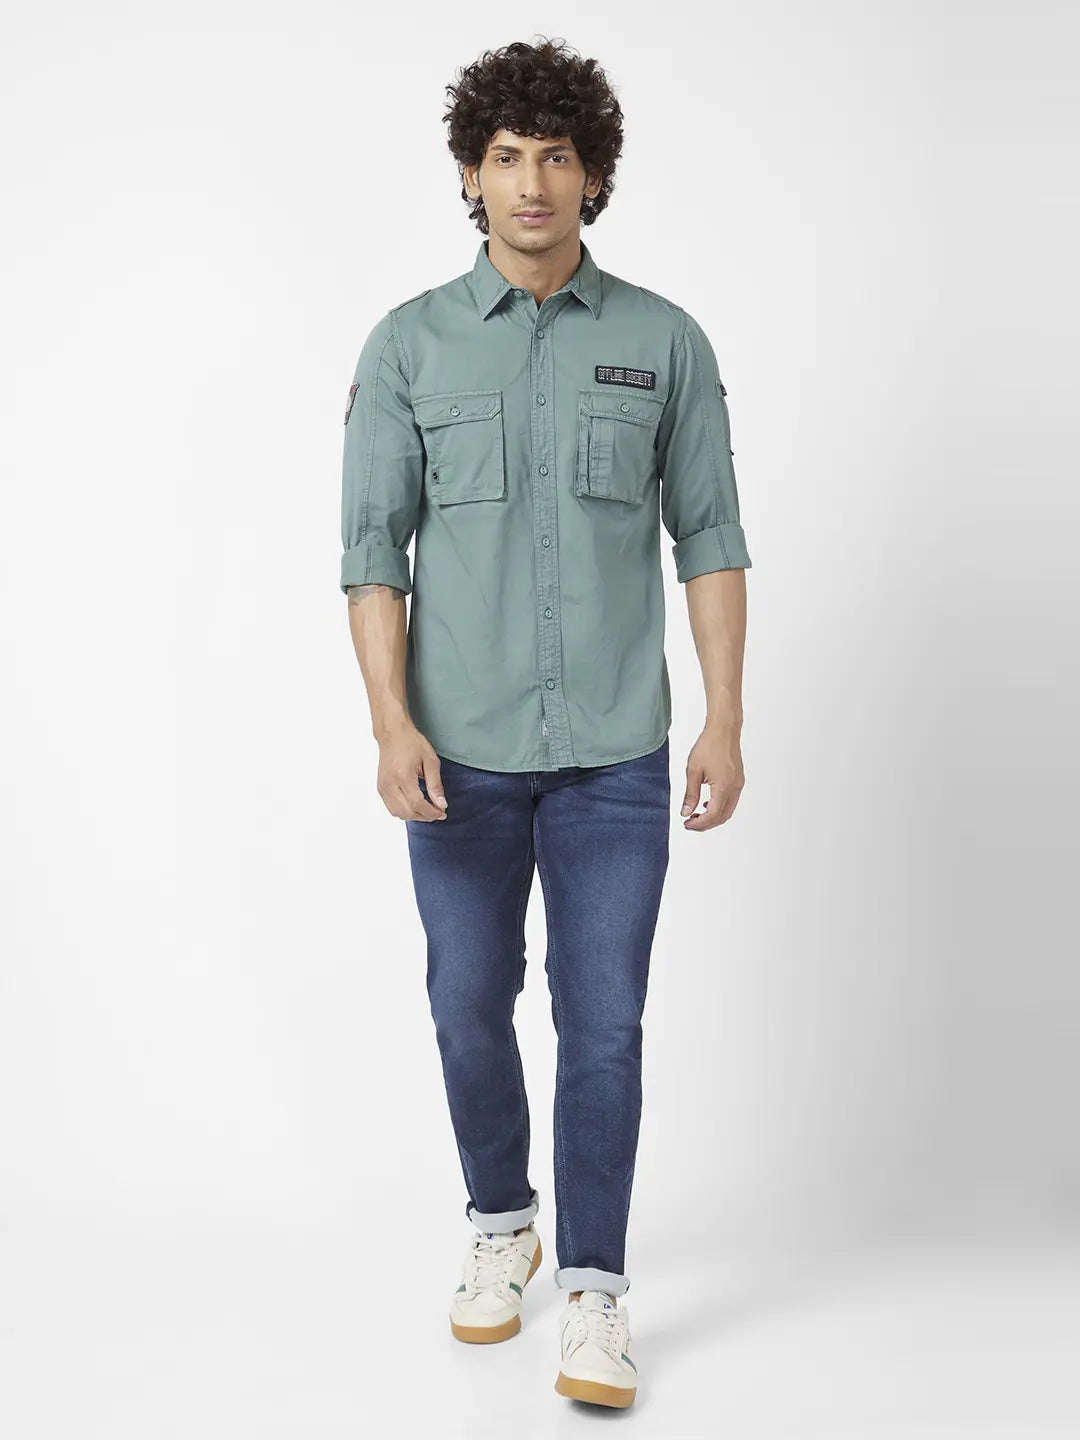 Men Olive Green Printed Denim Shirt, Regular Fit at Rs 350 in New Delhi